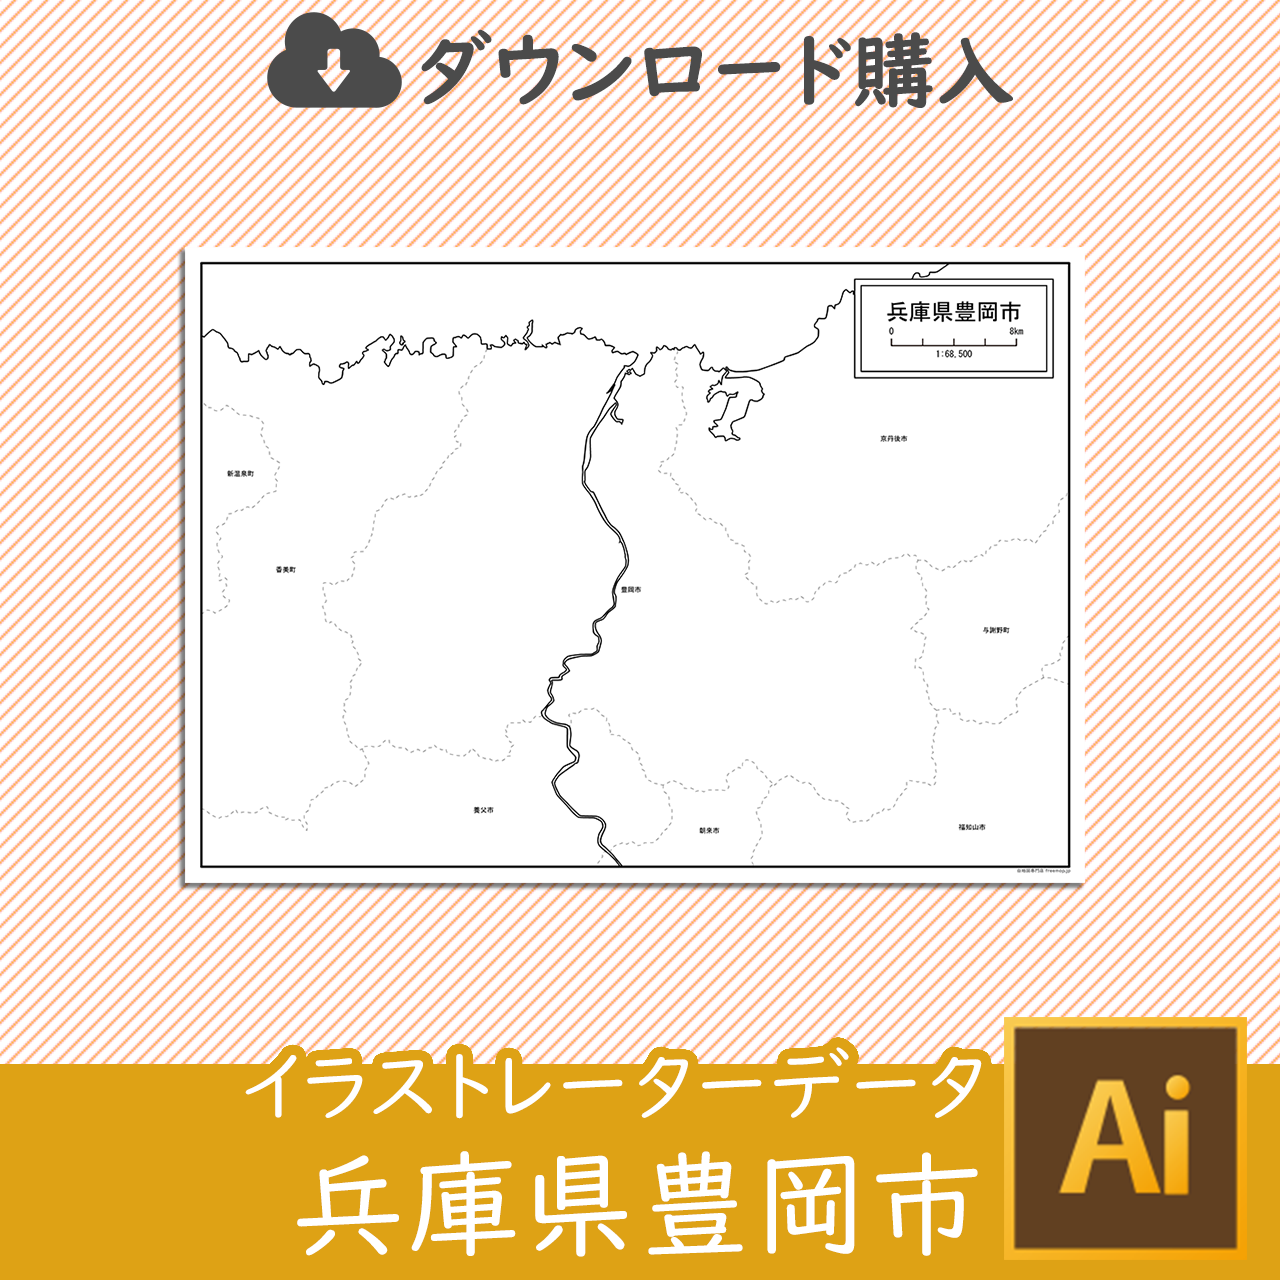 豊岡市のaiデータのサムネイル画像